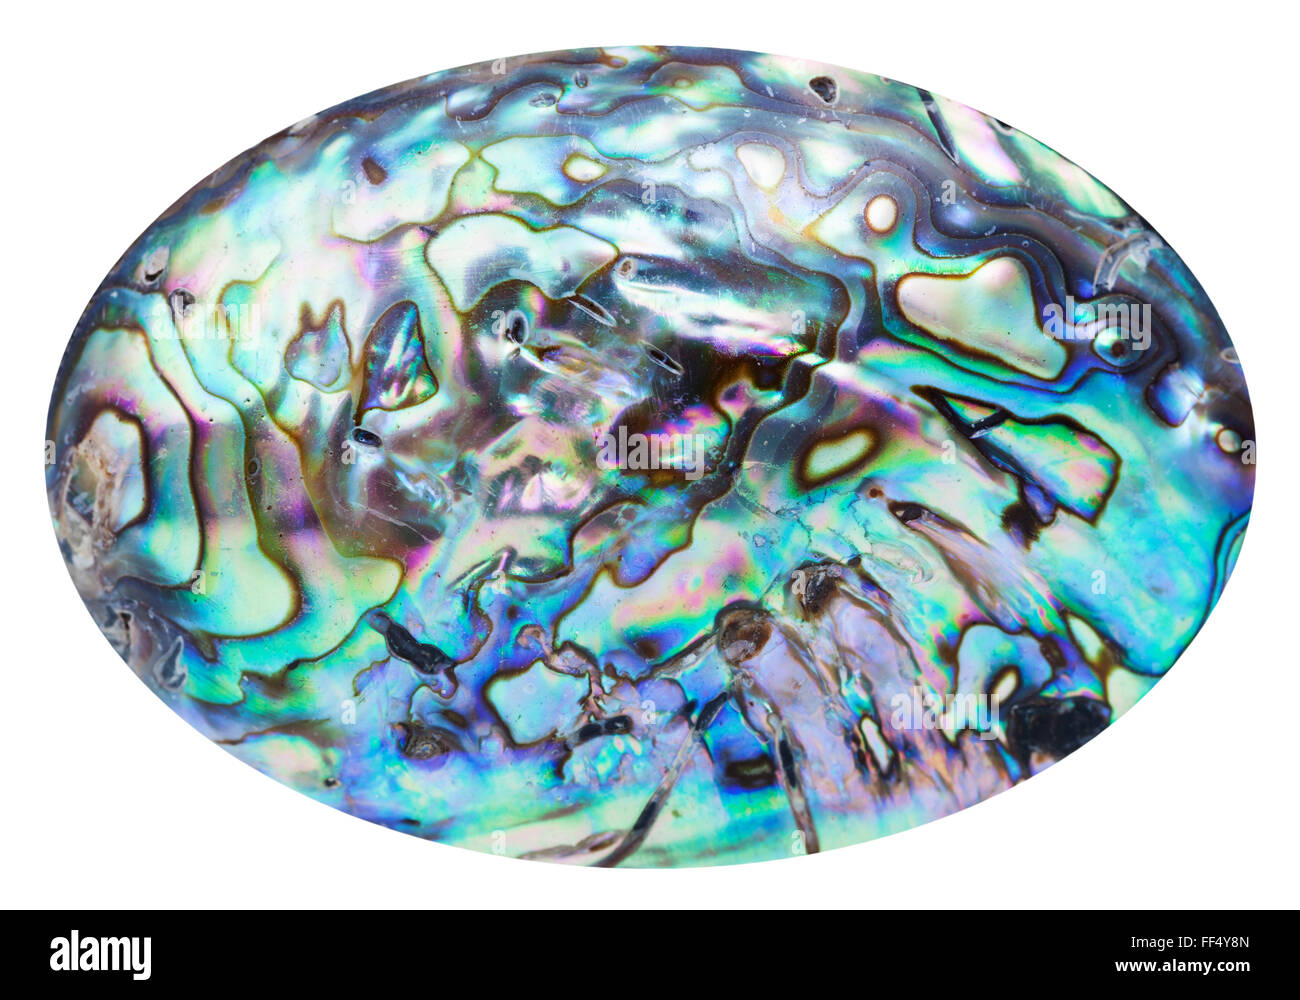 La surface polie de nacre bleu coquille mollusques isolé sur fond blanc Banque D'Images